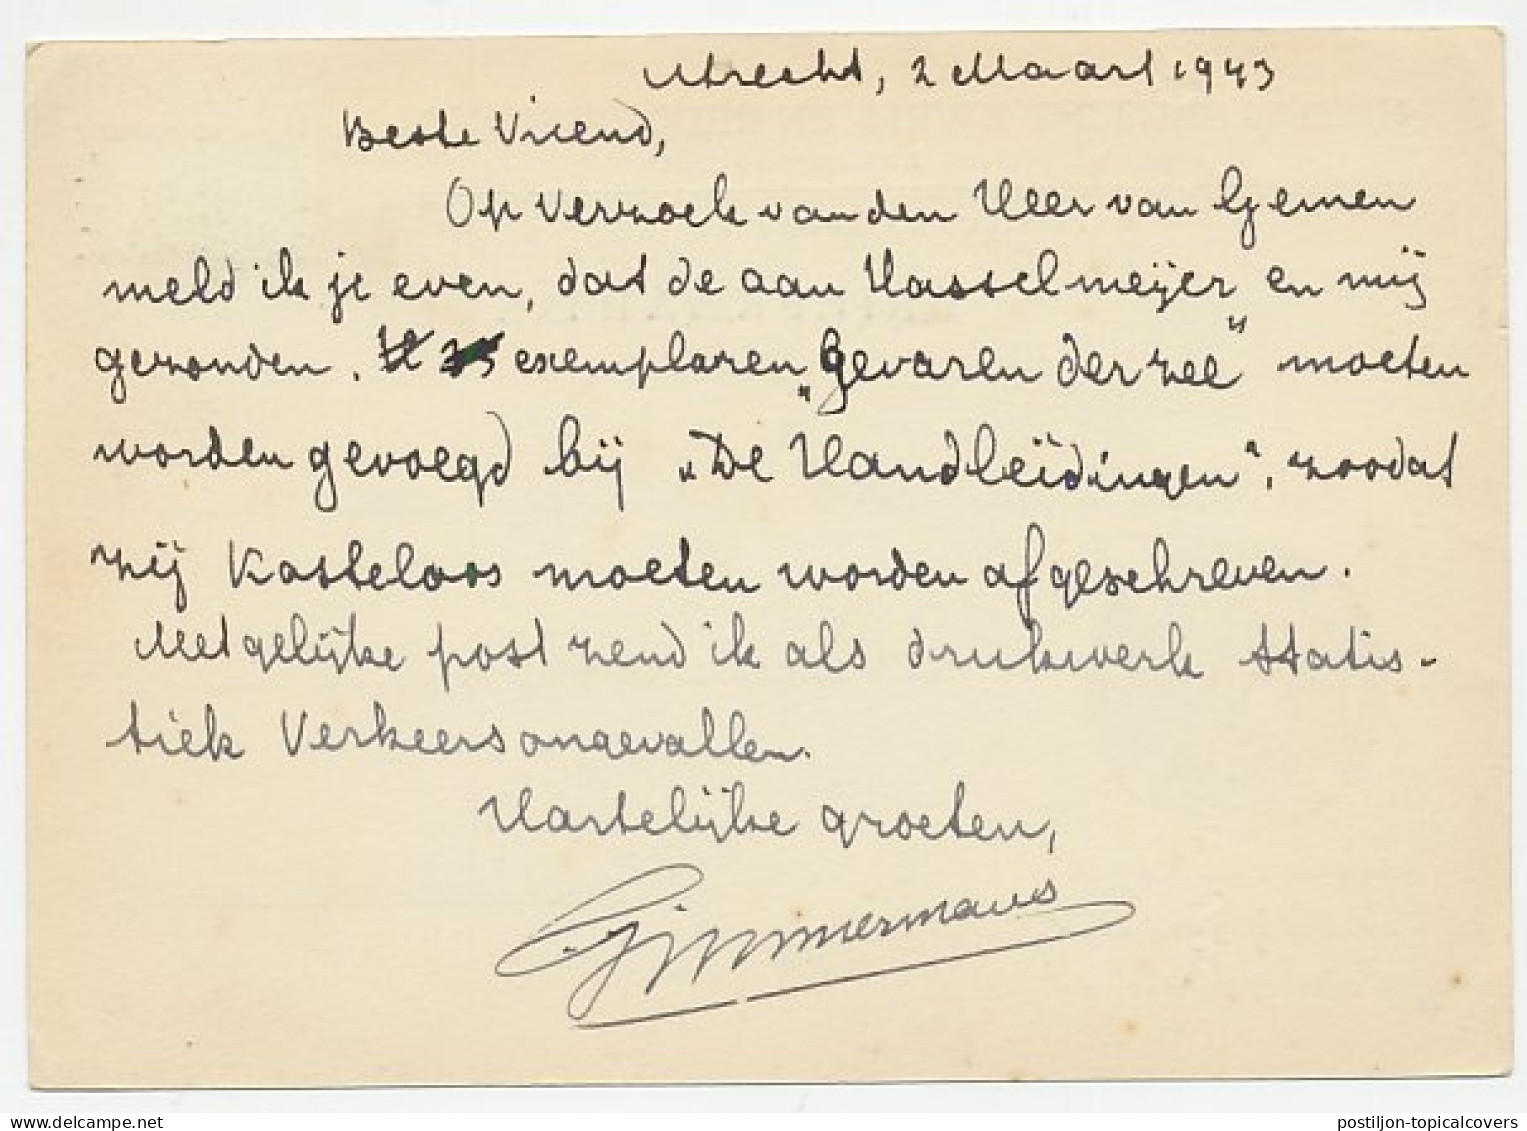 Briefkaart Utrecht 1943 - Reddingsbond - Ohne Zuordnung